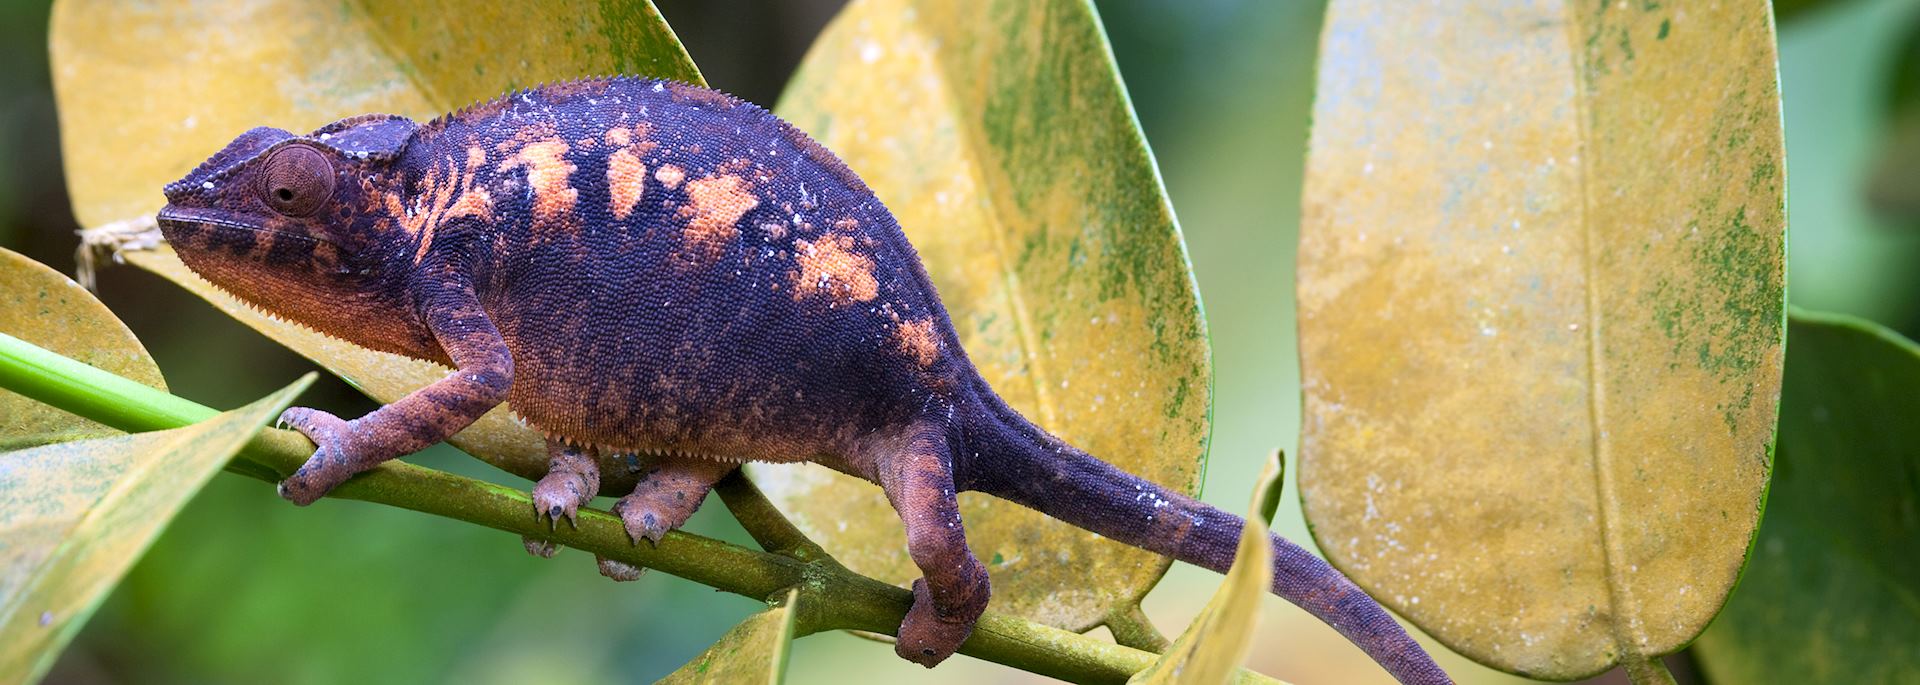 Madagascar chameleon